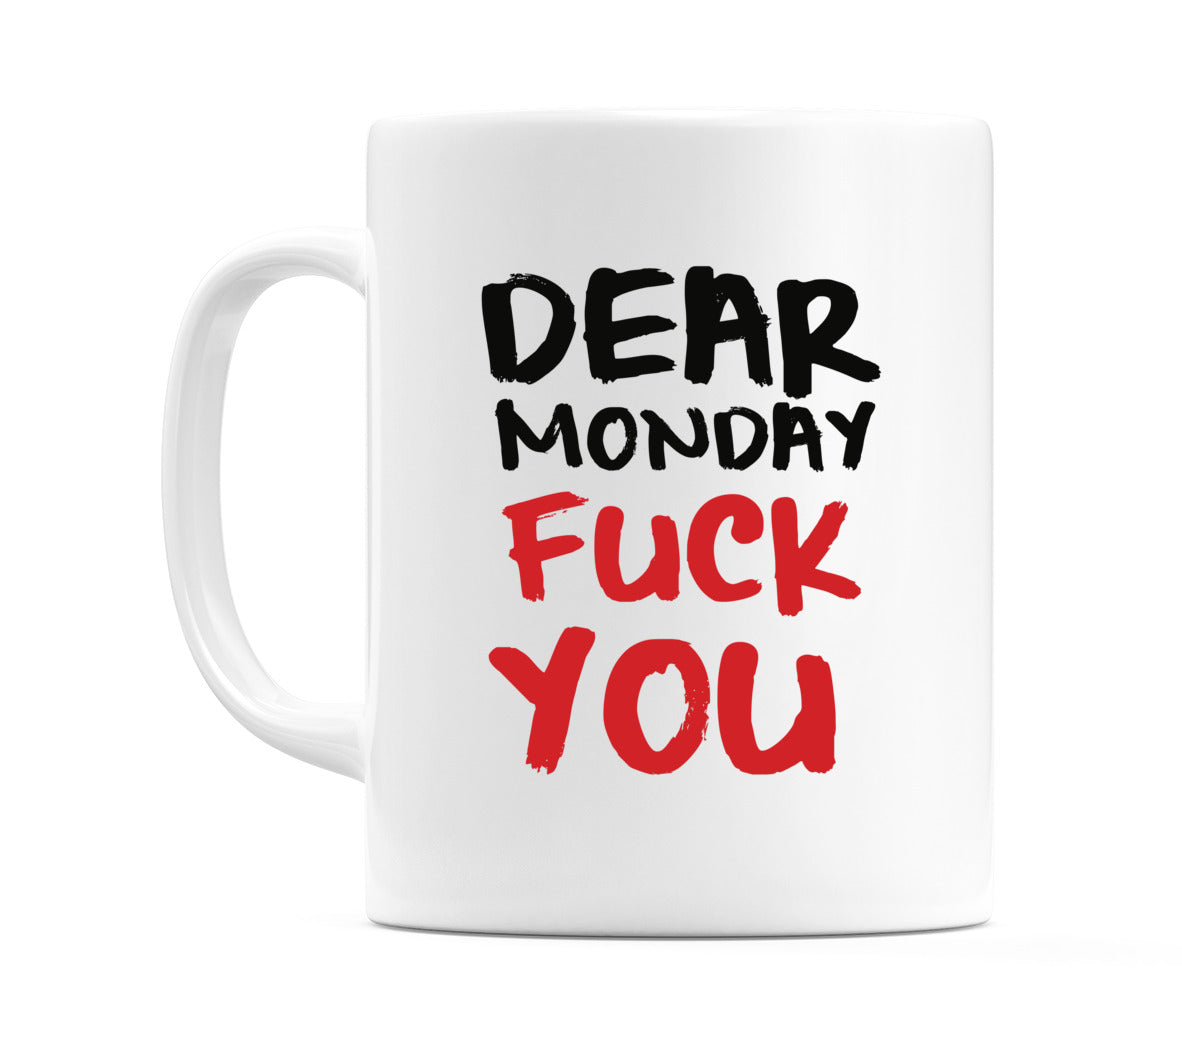 Dear Monday Fuck You